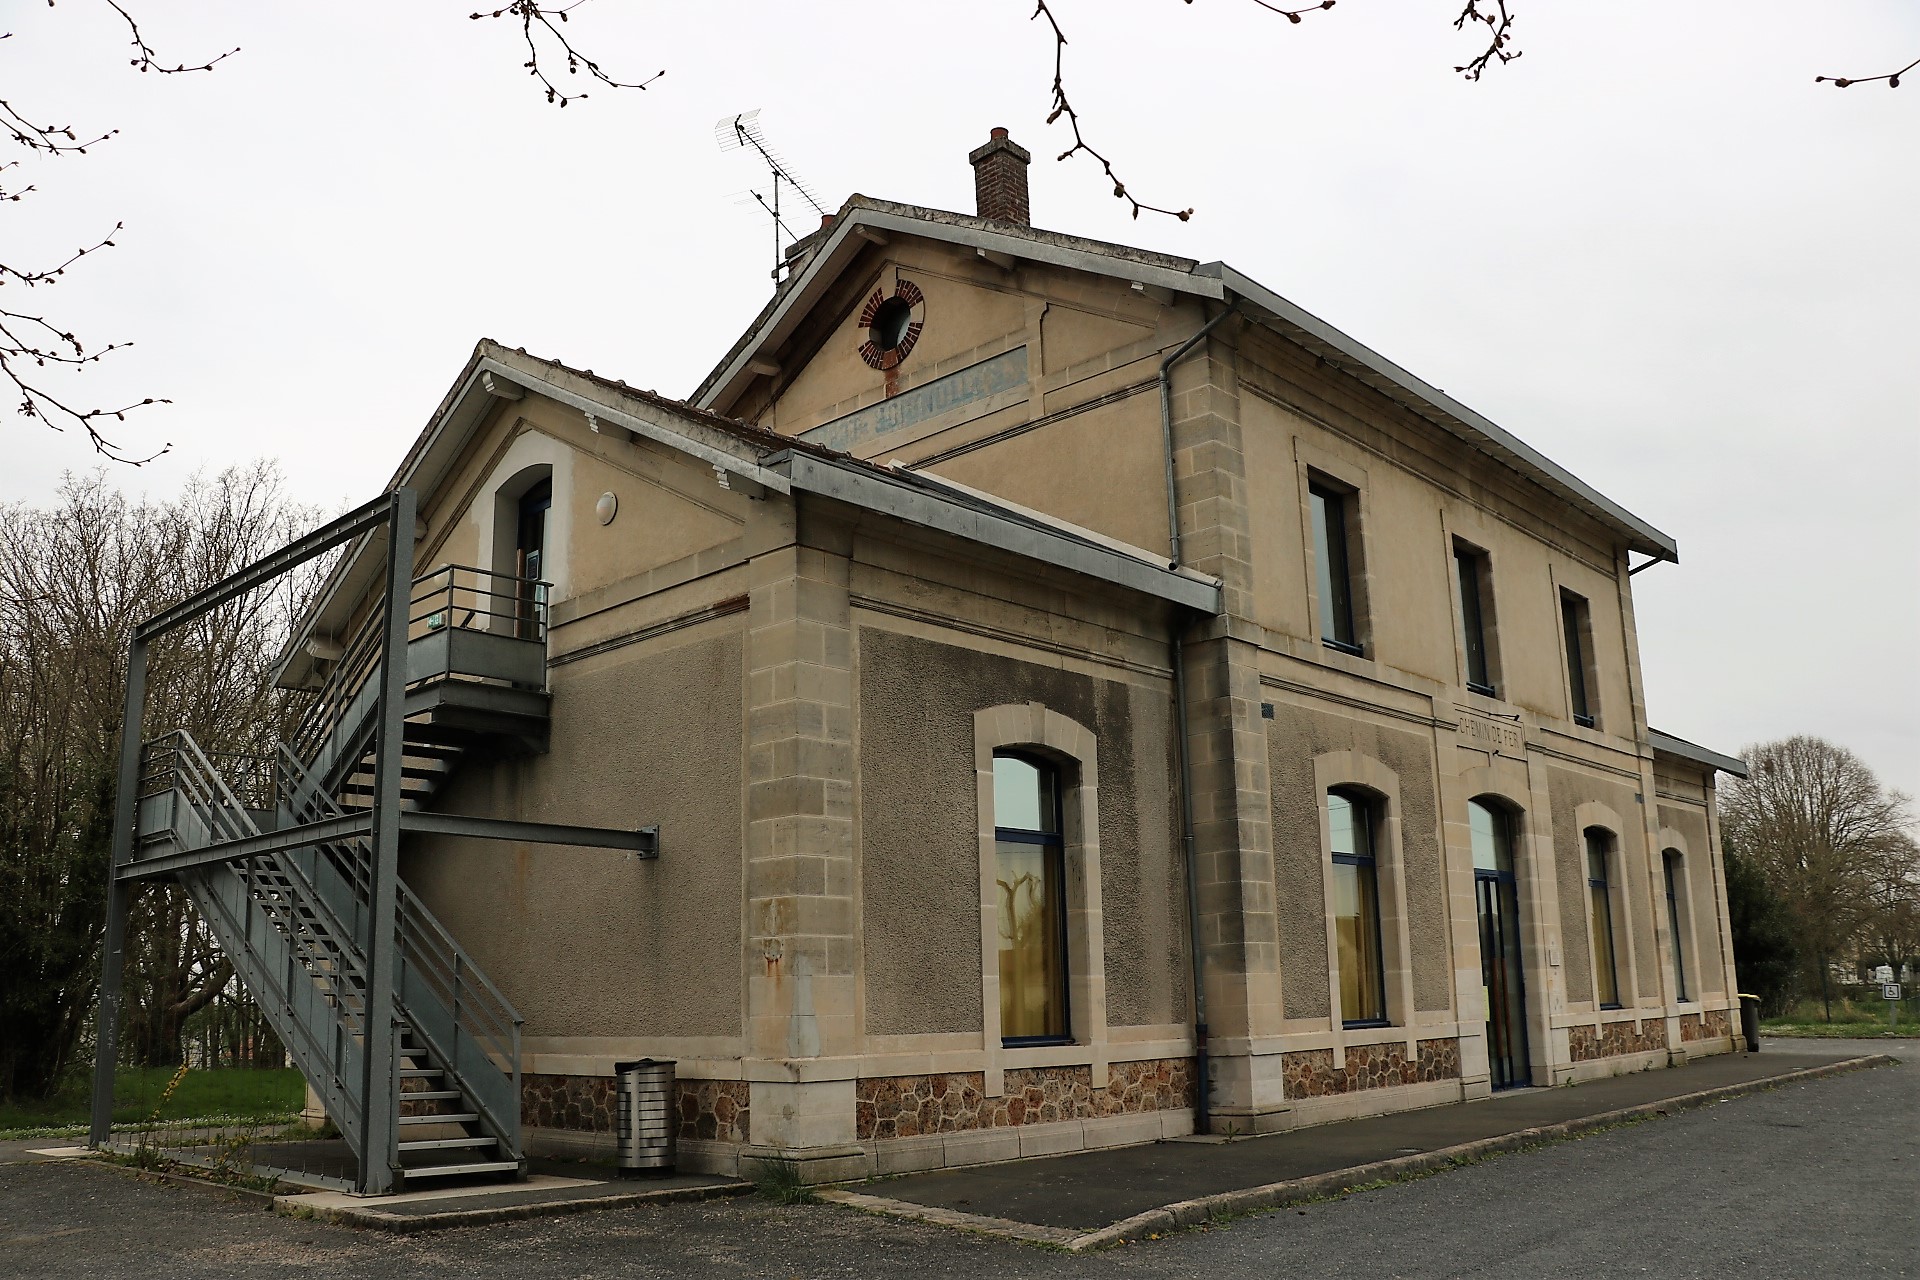 Gare de Coubert-Soignolles